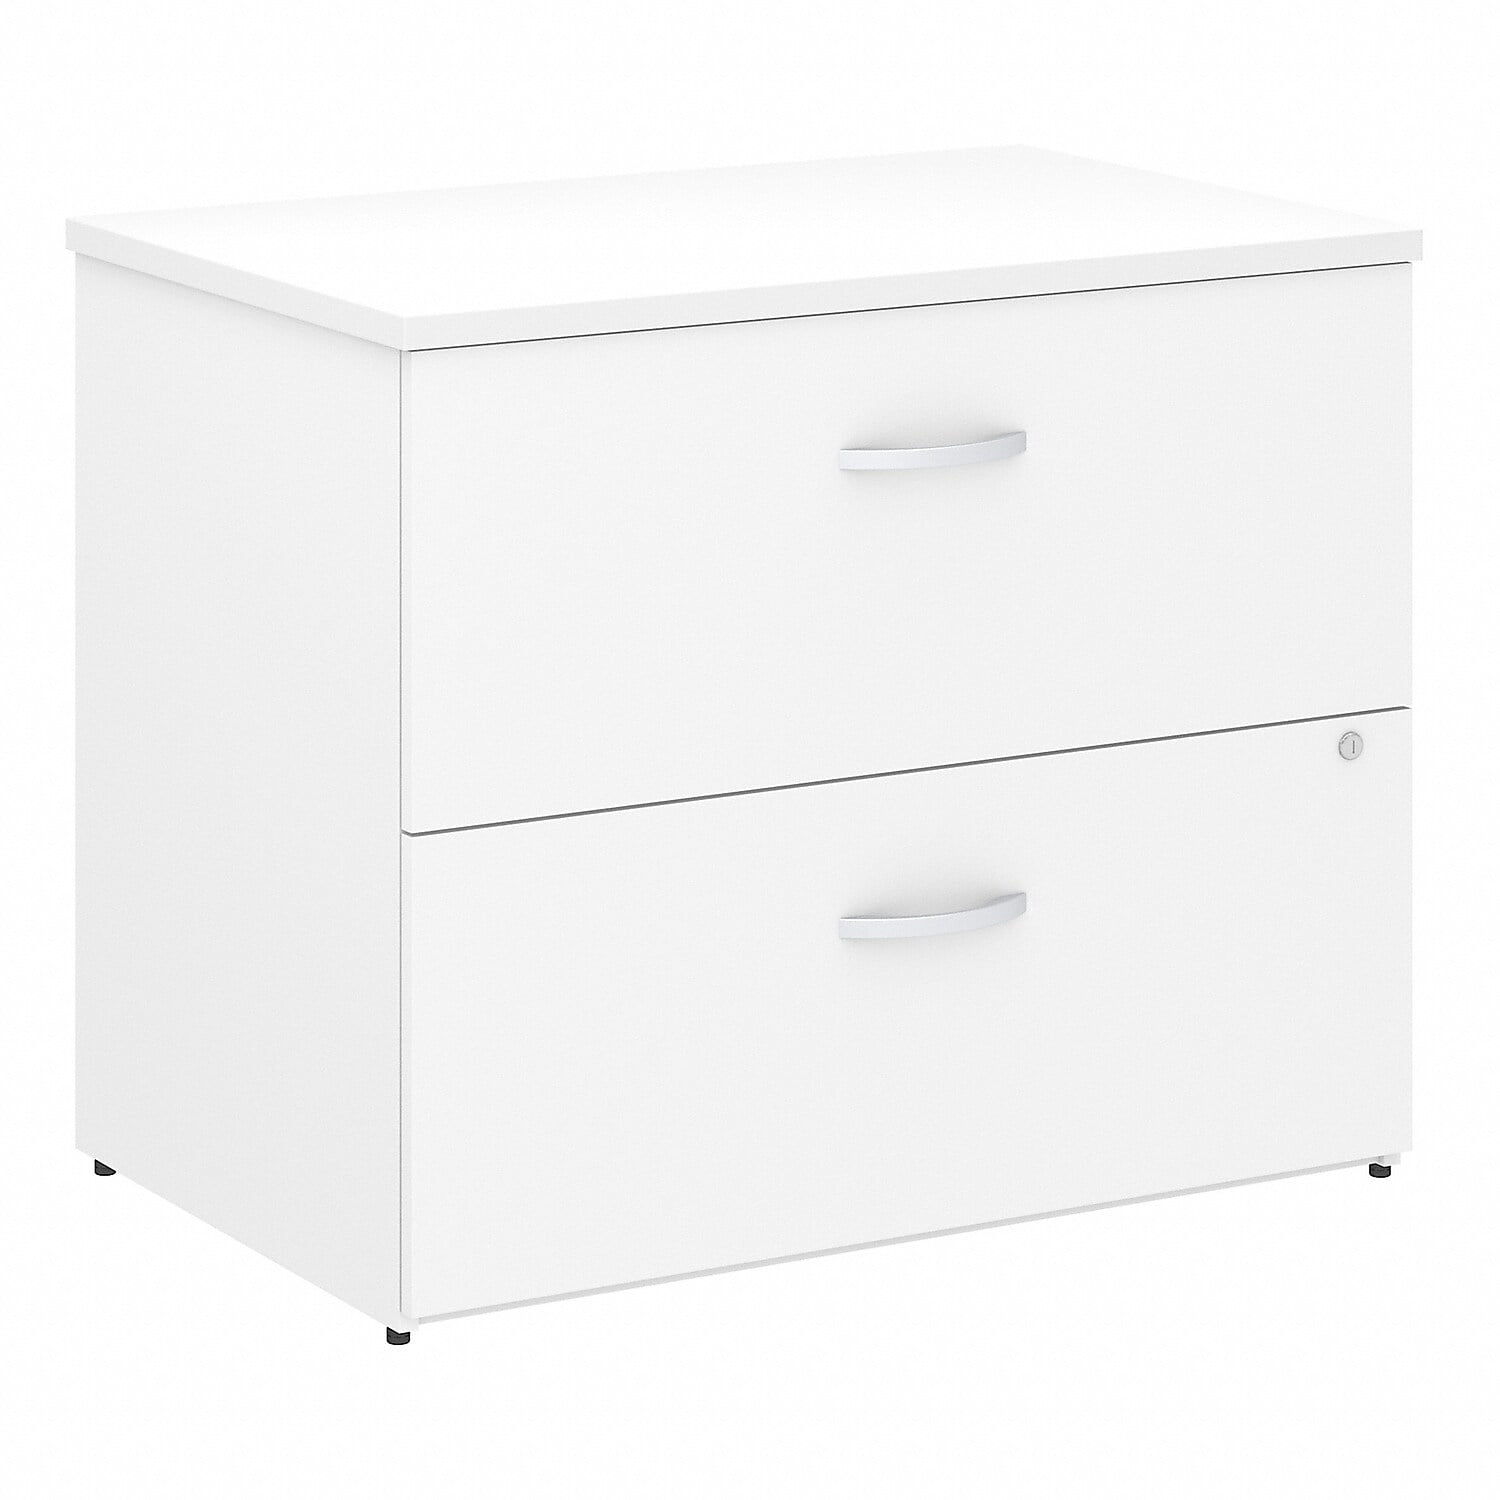 Picture of Bush Business Furniture SCF136WHSU Studio C Lateral File Cabinet - White